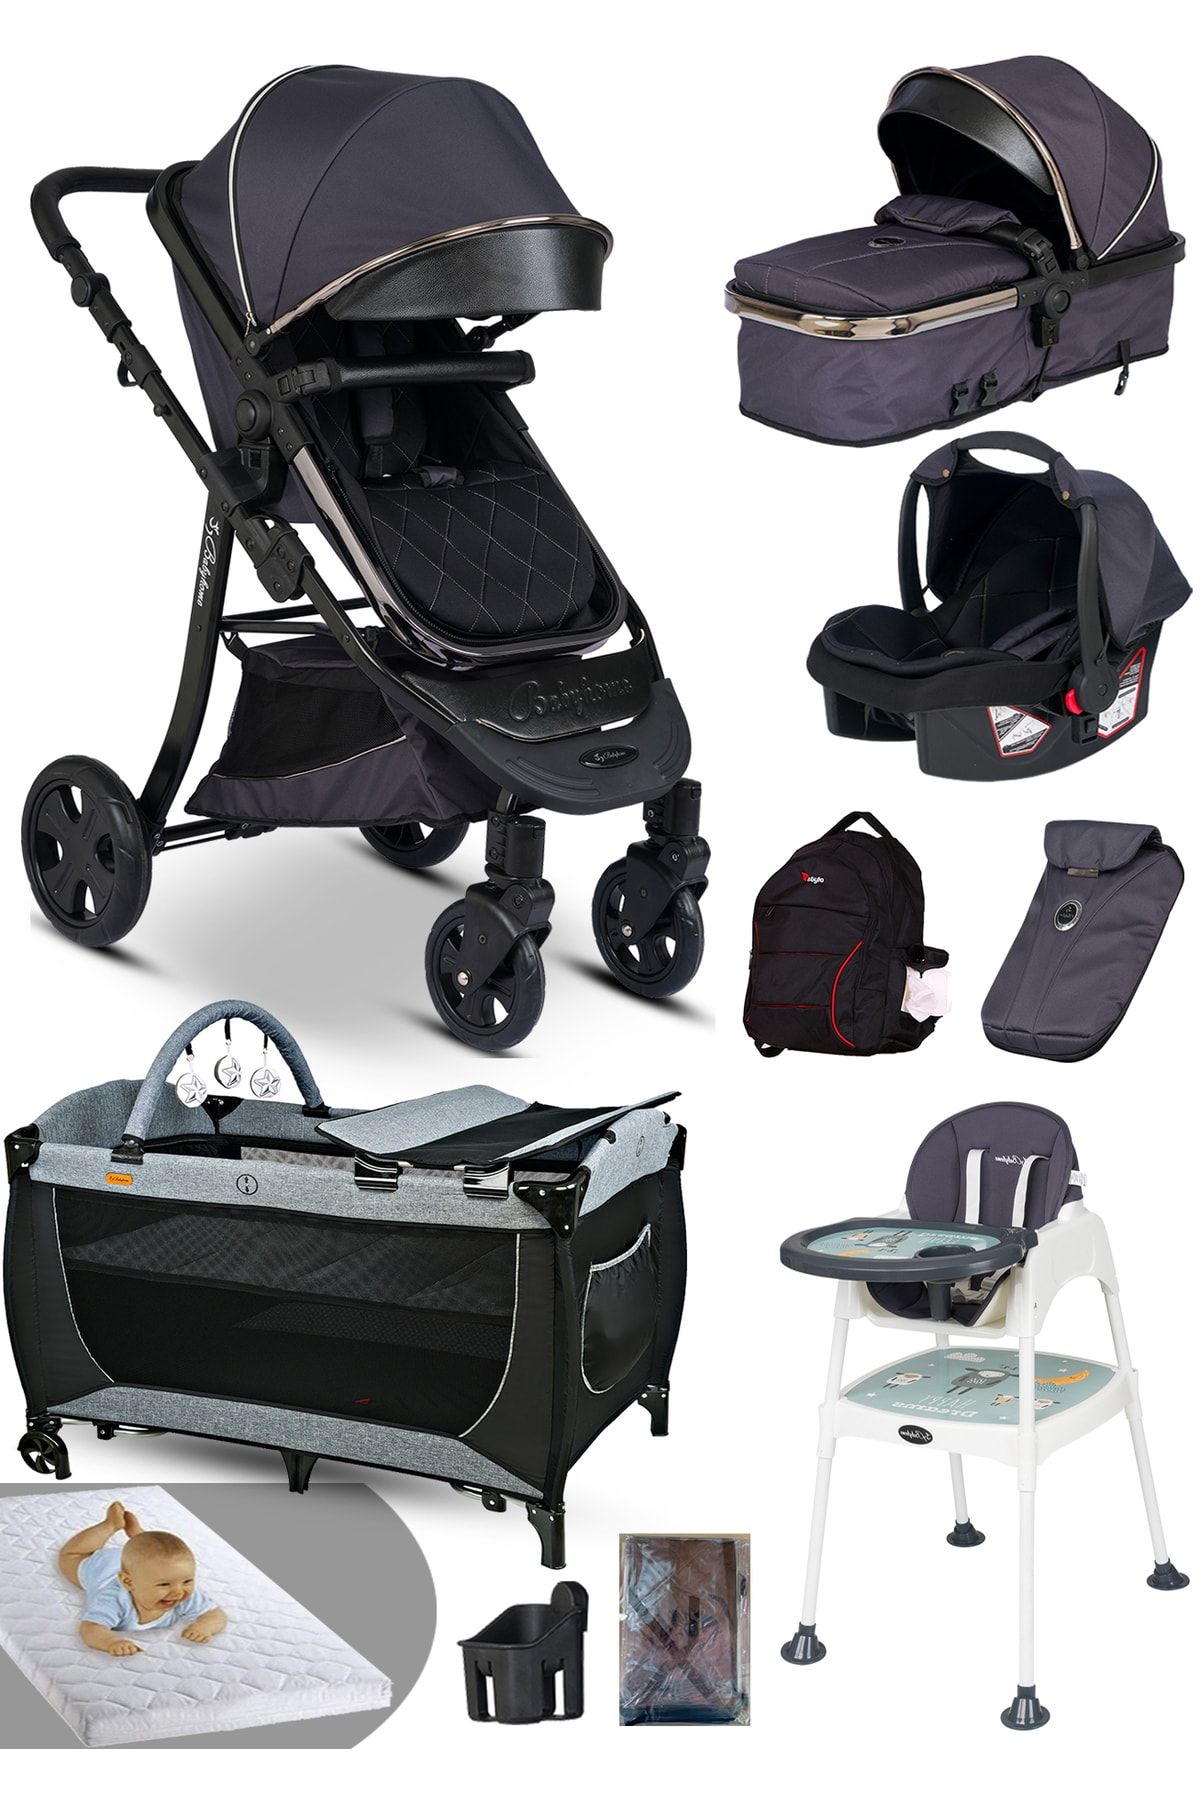 Baby Home Ekonomi Paket 10 In 1 985 Travel Sistem Bebek Arabası Oyun Parkı Yatak Beşik Mama Sandalyesi